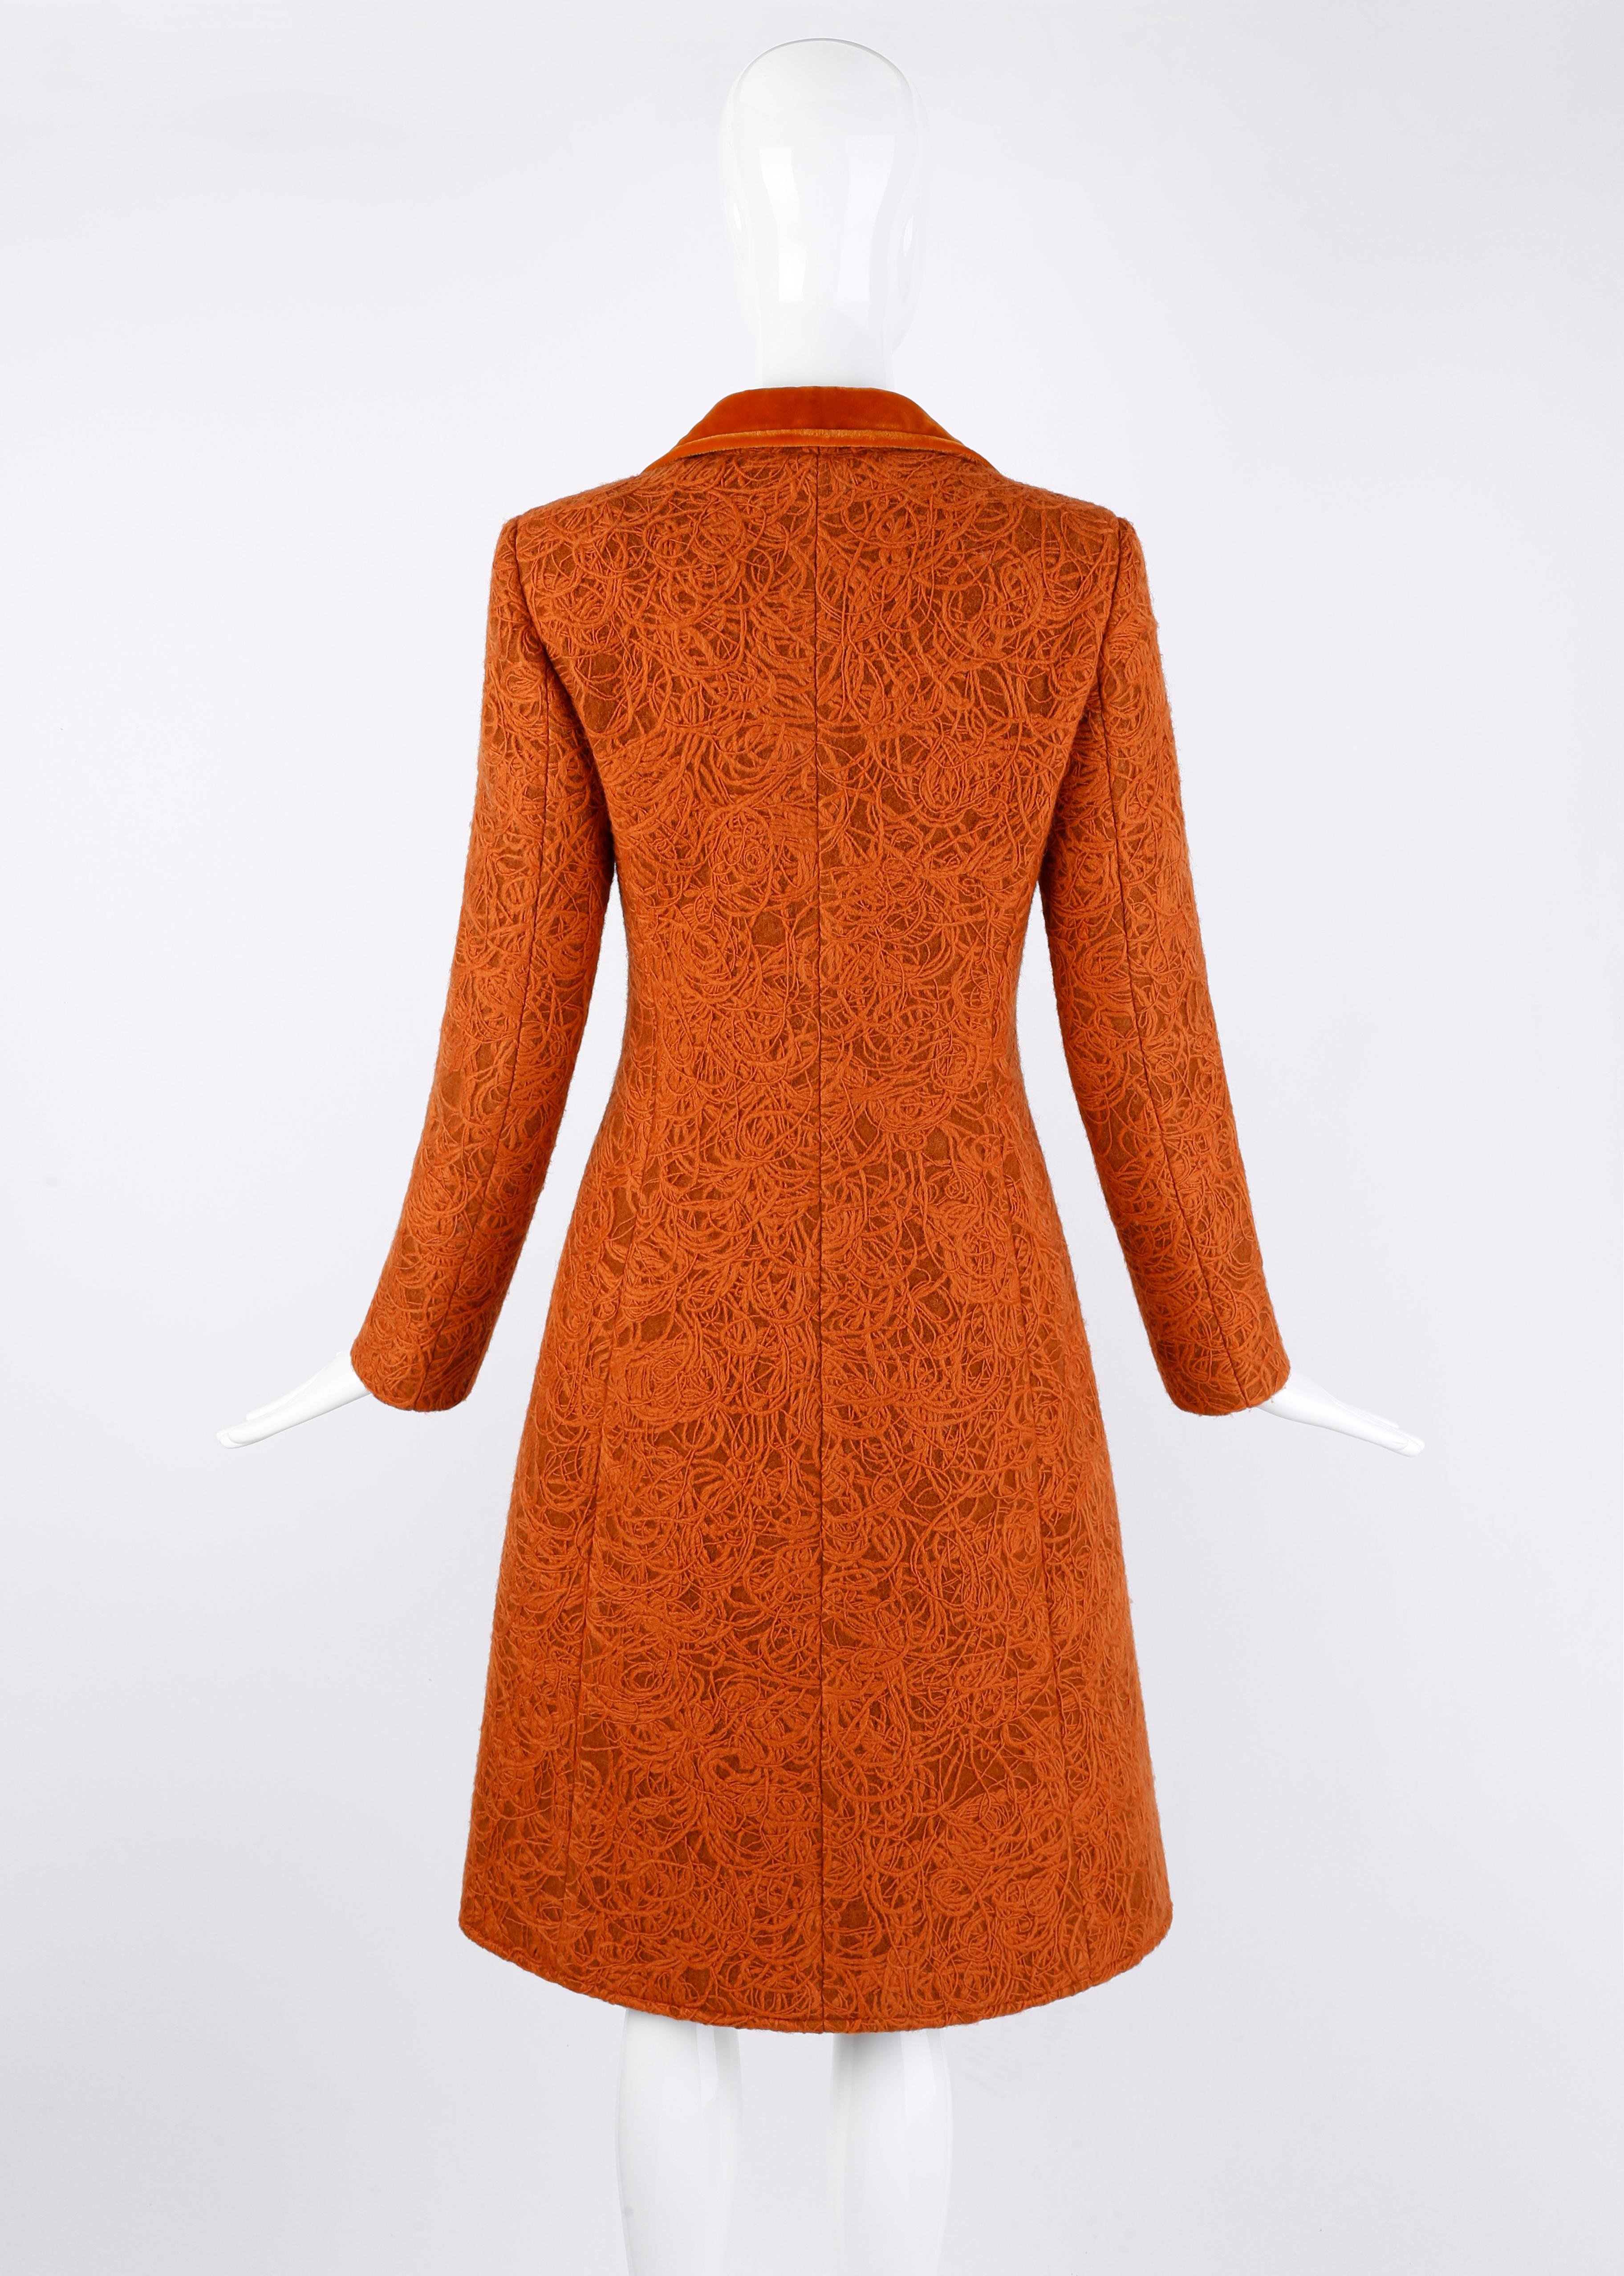 Women's Alexander McQueen c.1996 Rust Orange Textured Wool Tailored Dress Jacket Coat  For Sale